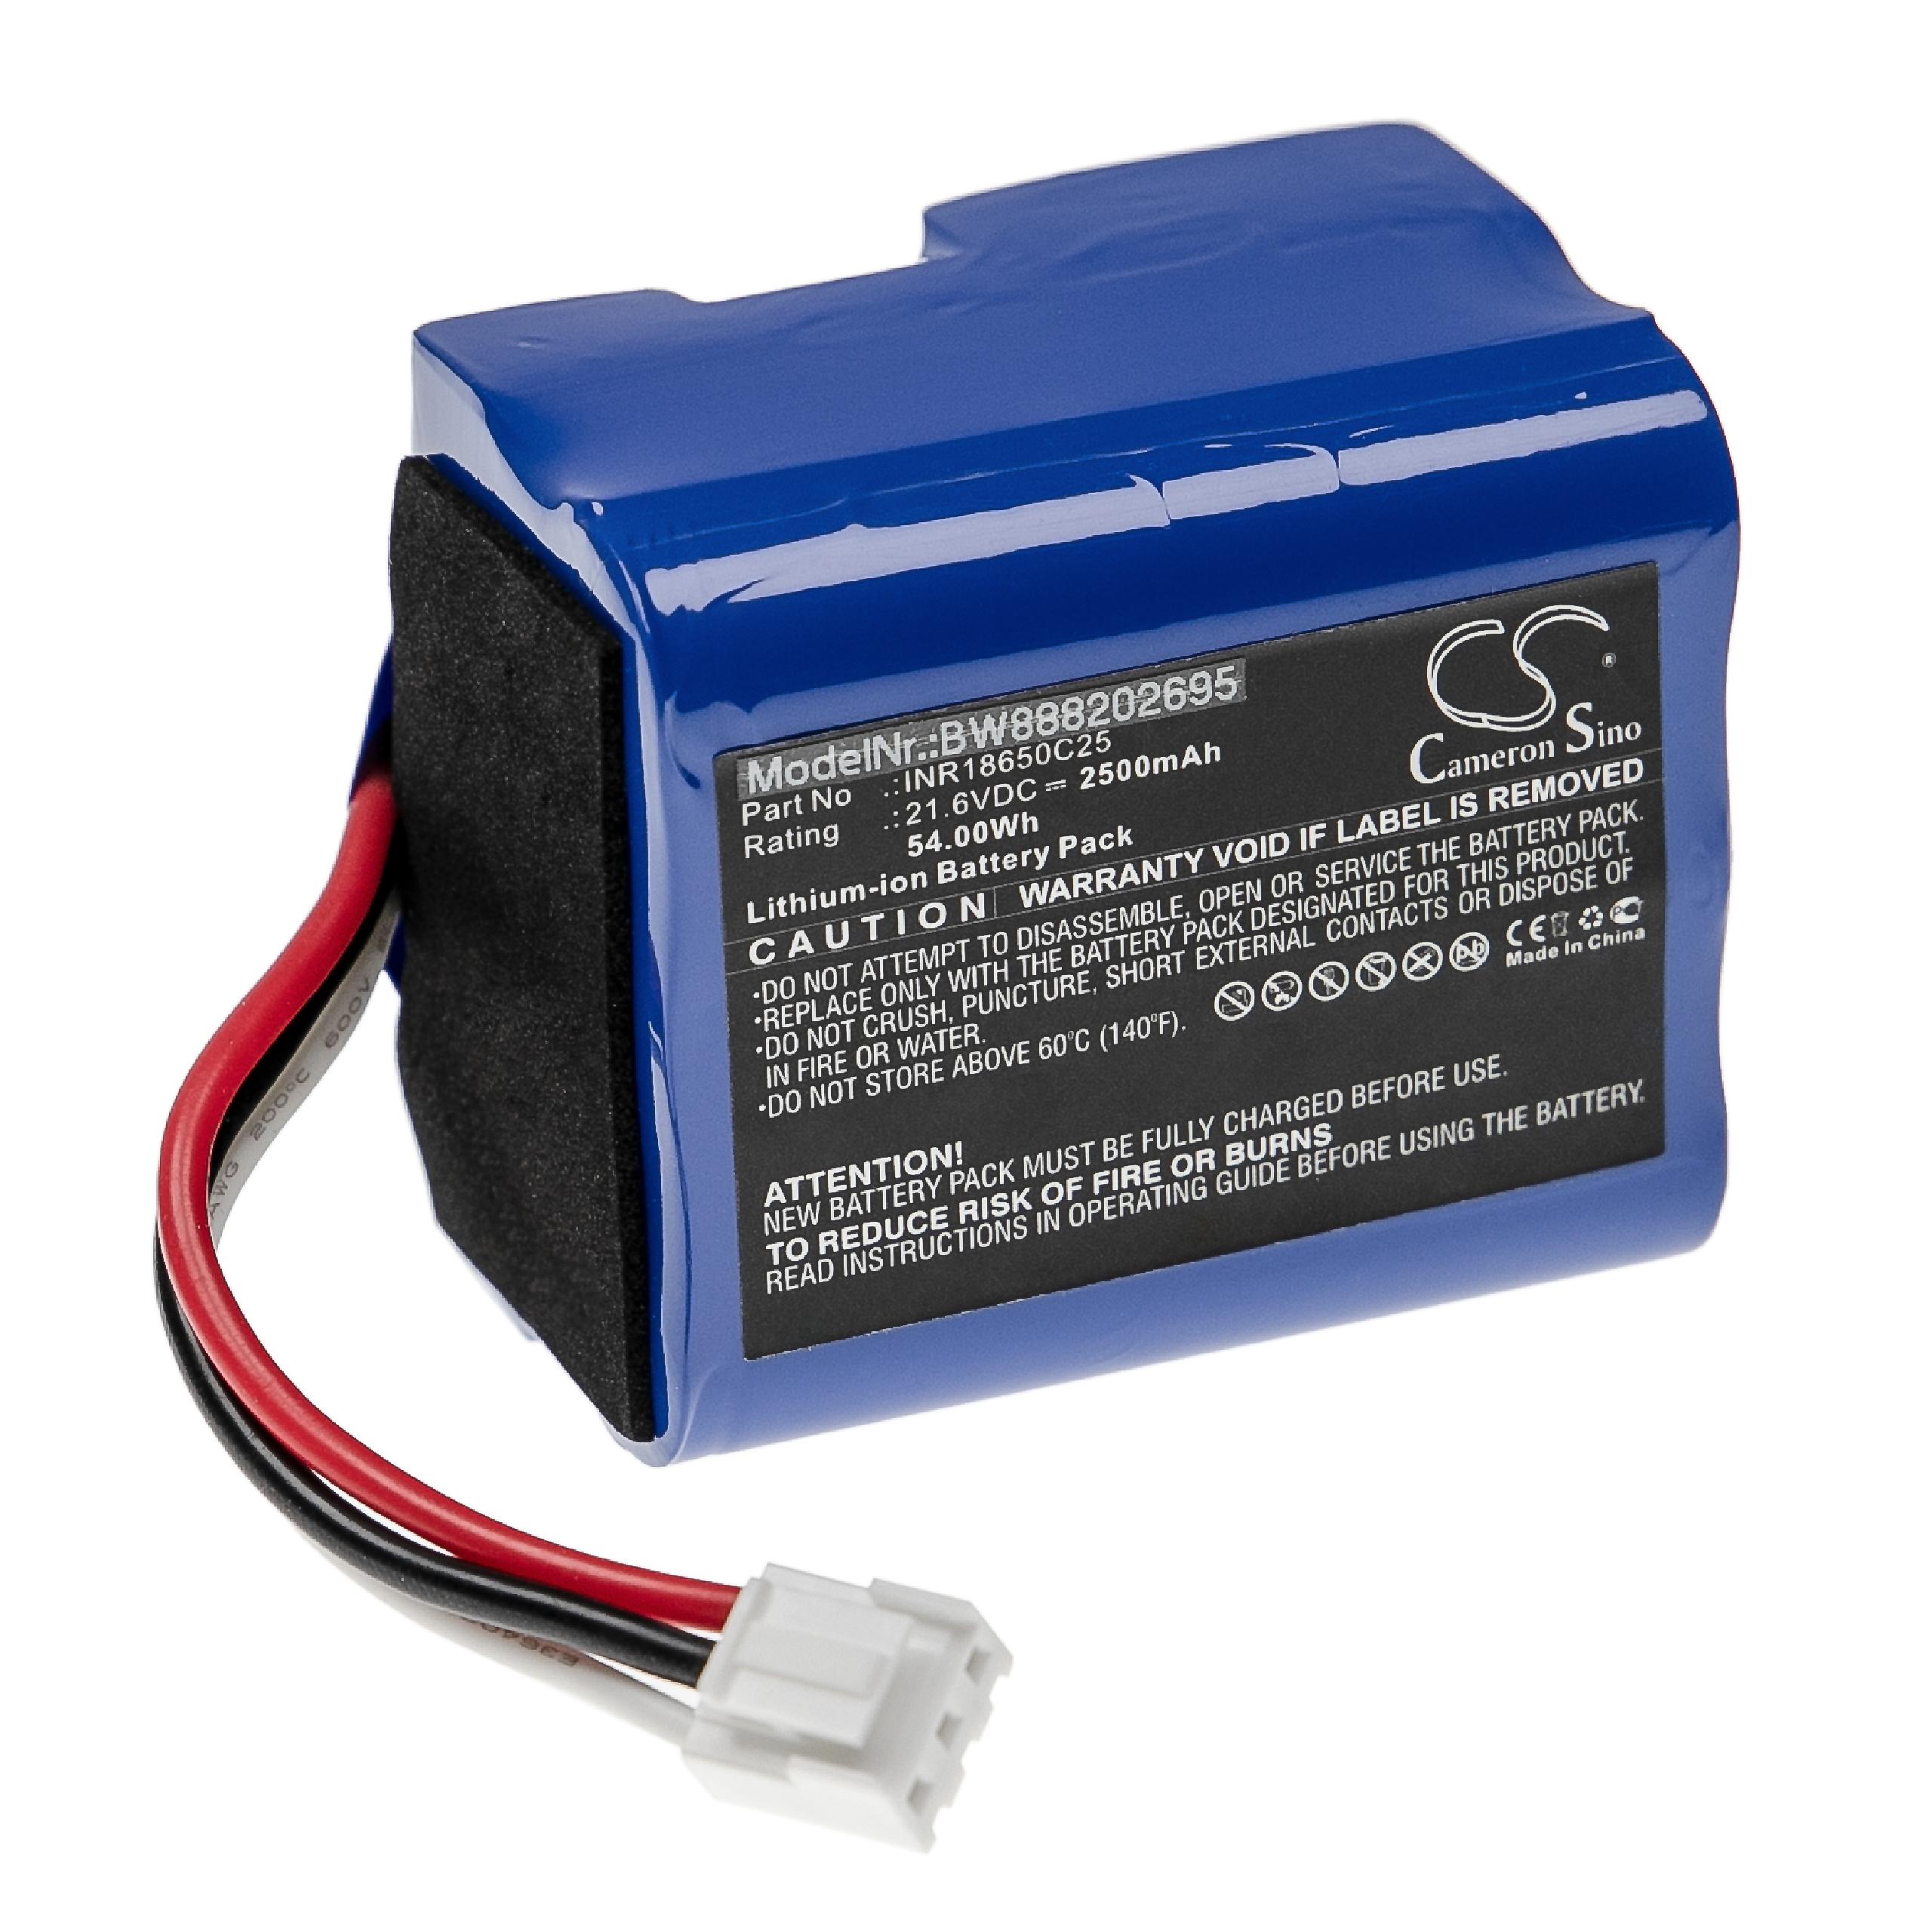 Batterie remplace Philips 3000-018-25613, INR18650C25, 300002906404 pour aspirateur - 2500mAh 21,6V Li-ion